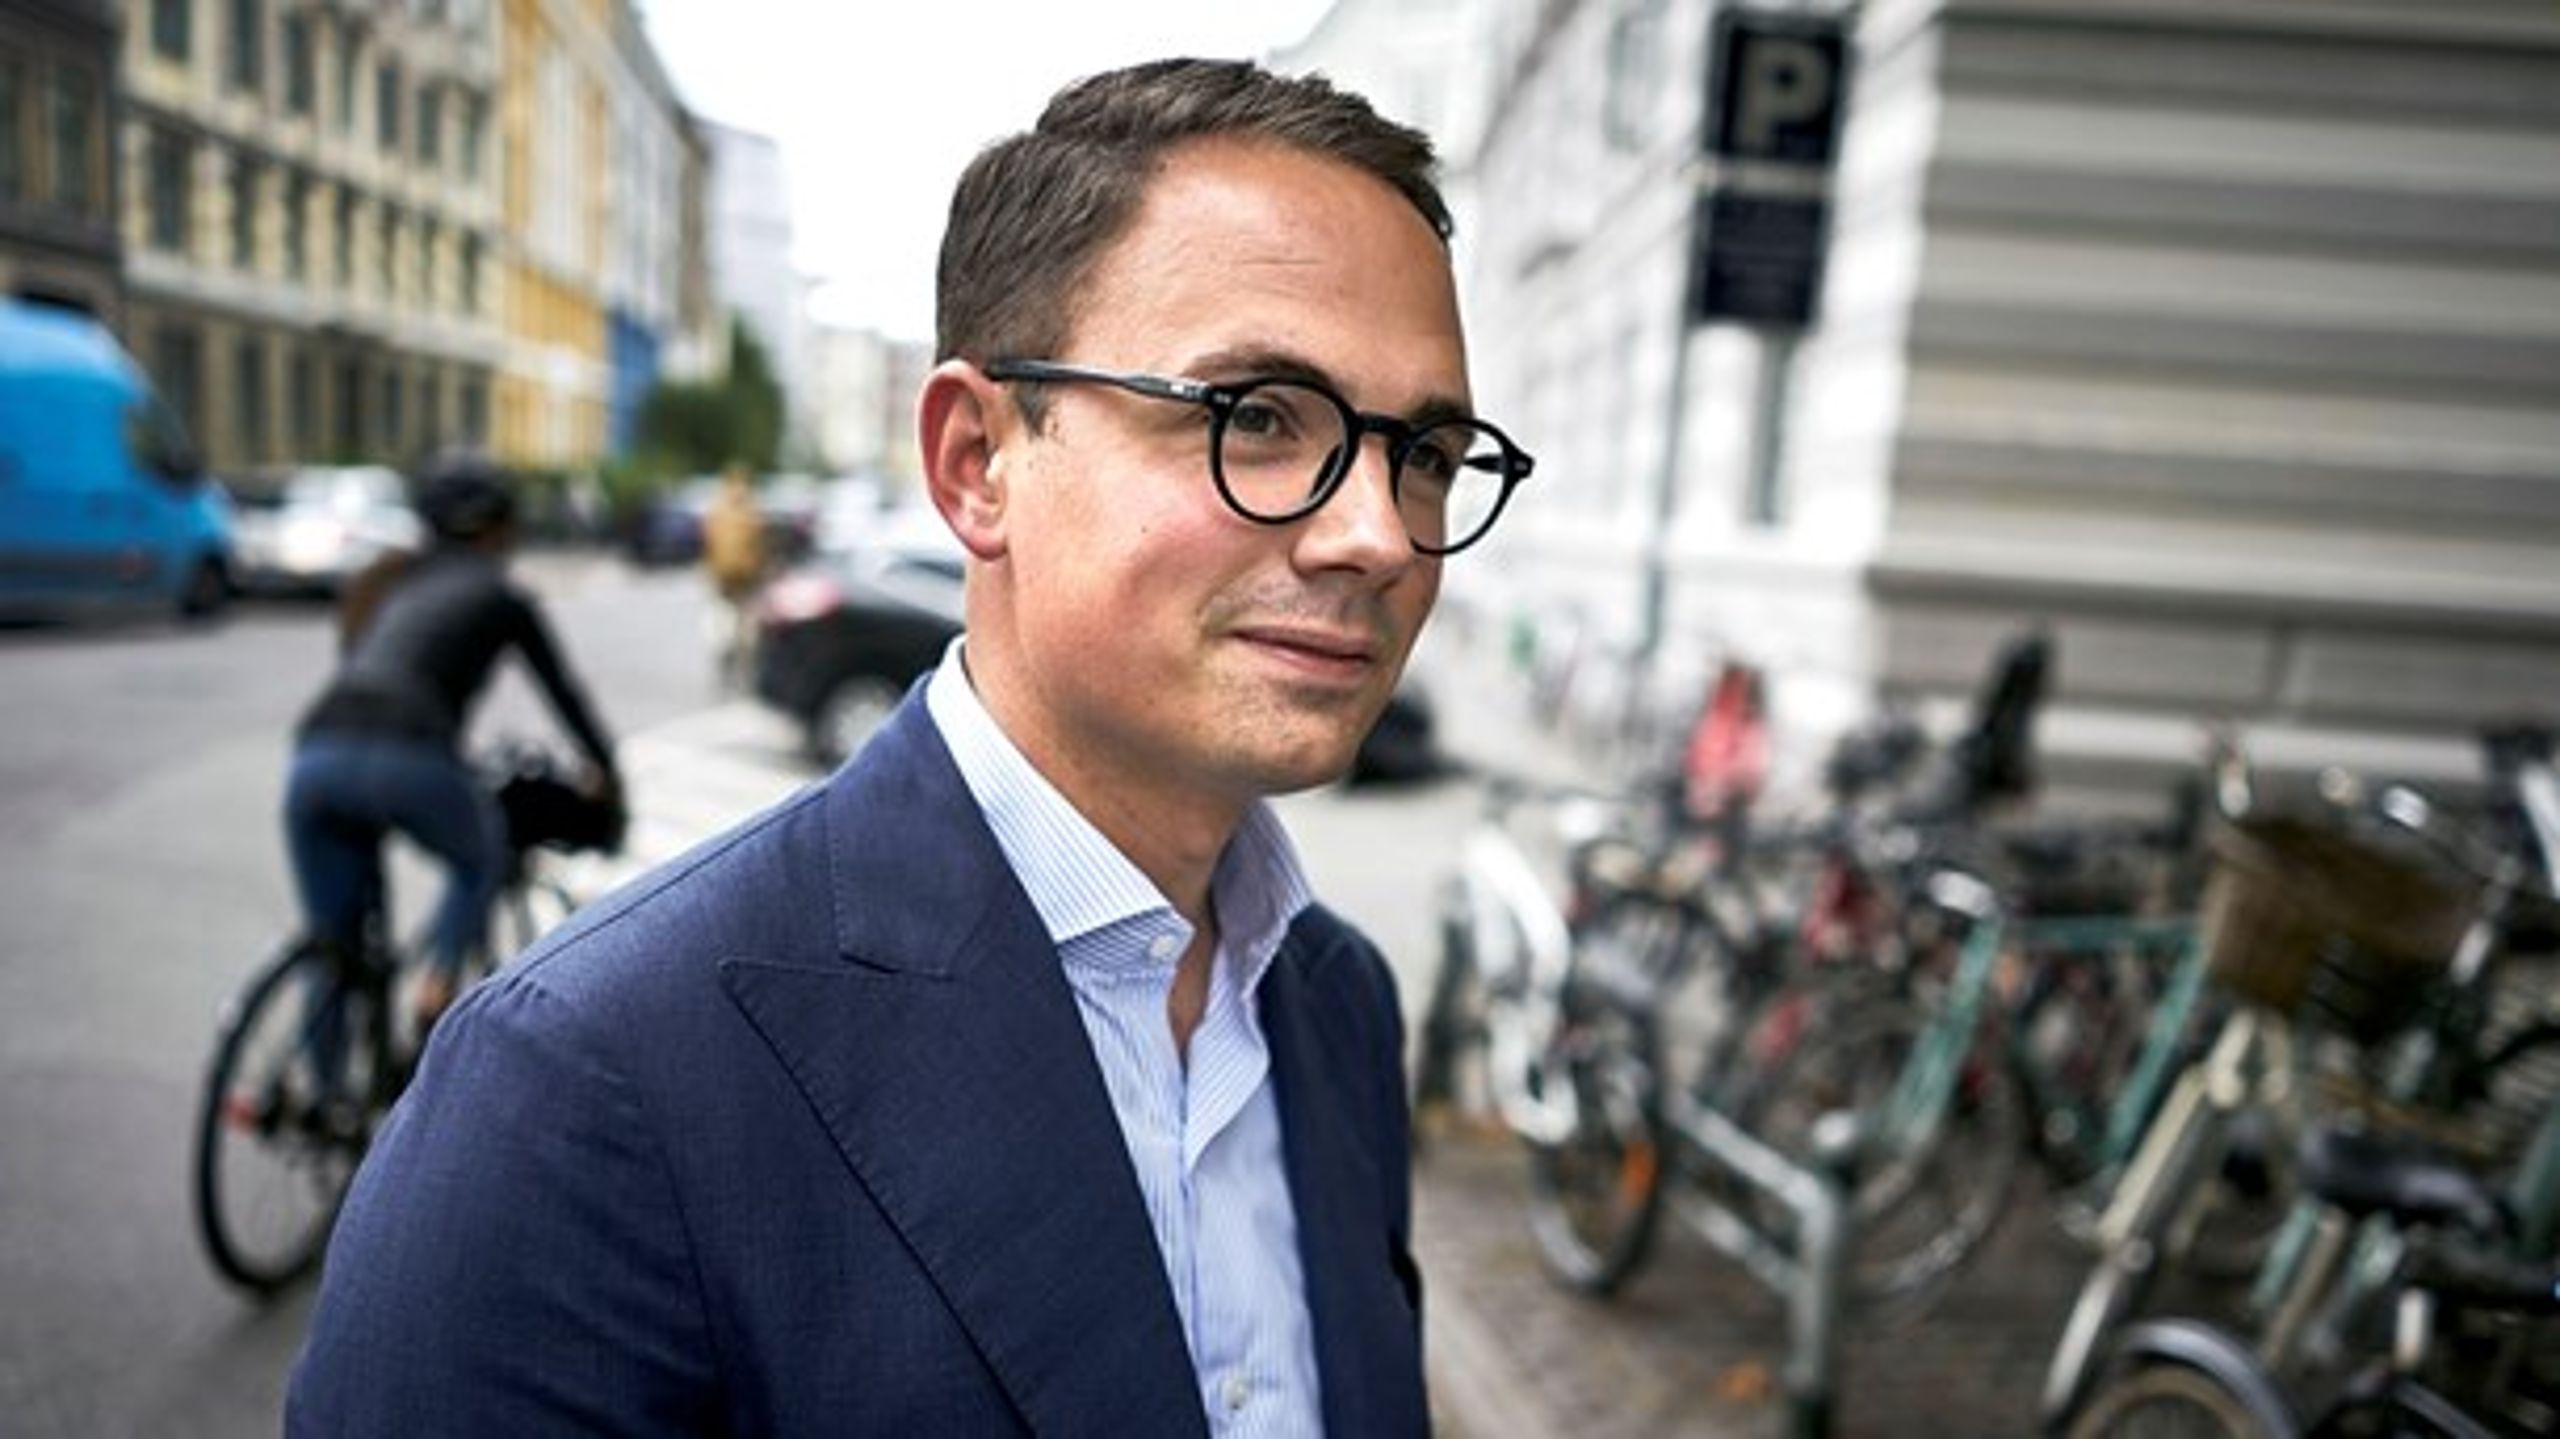 Den konservative lokalpolitiker og tidligere advokat Simon Aggesen var kun 31 år, da han sidste år overtog borgmesterposten på Frederiksberg efter Jørgen Glenthøj. Nu er han kommet i mediestormvejr på grund af en privat bolighandel.